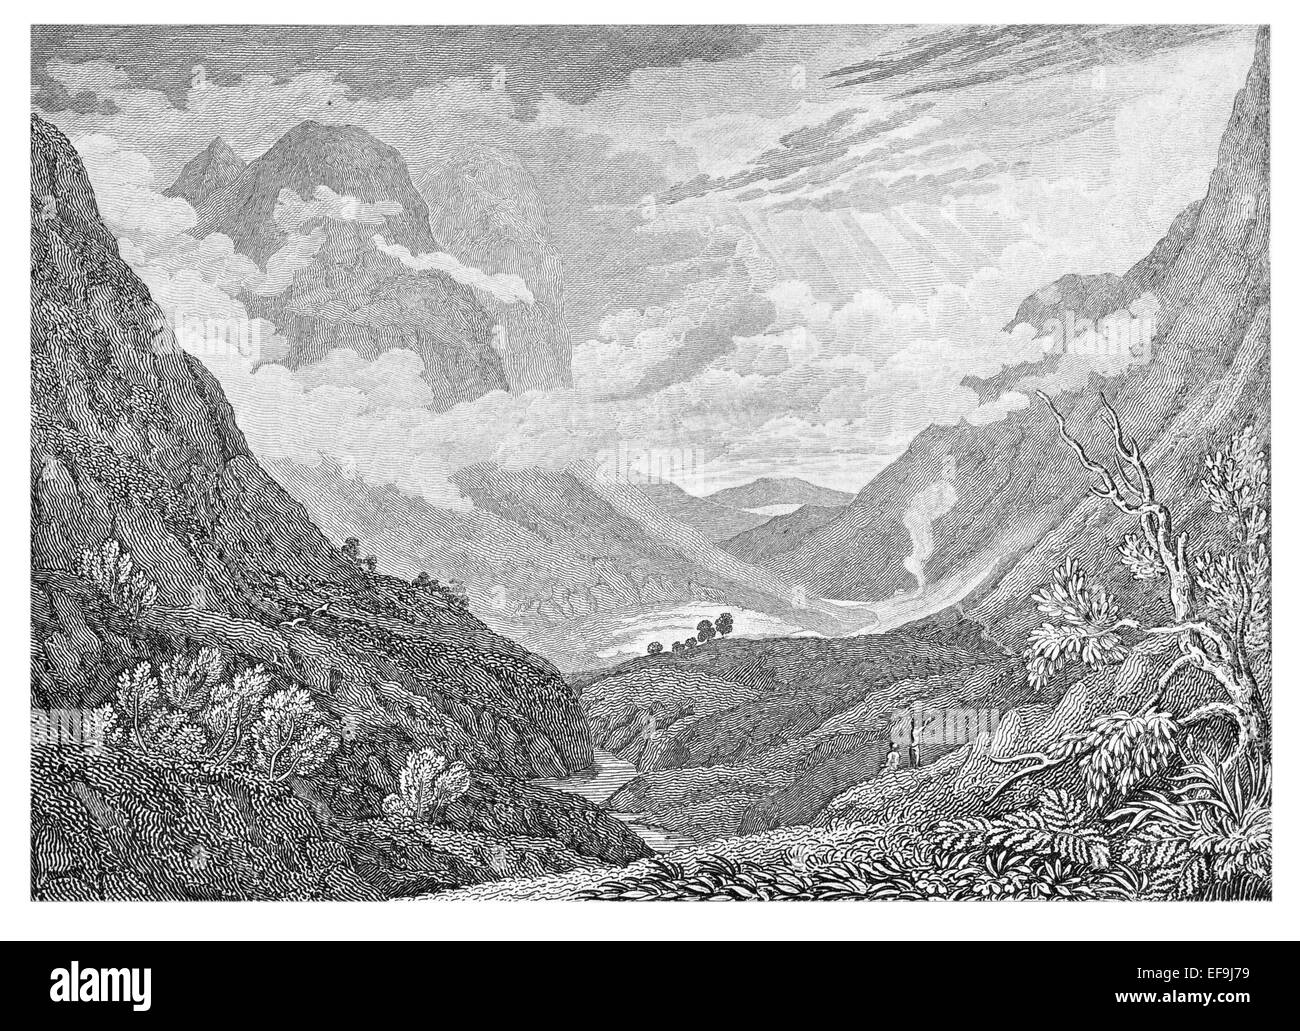 Imagen de Escocia por Robert Chambers publicado en 1837 Glencoe Glen Coe comité Lochaber Gleann Comhan área de Highland Consejo Foto de stock